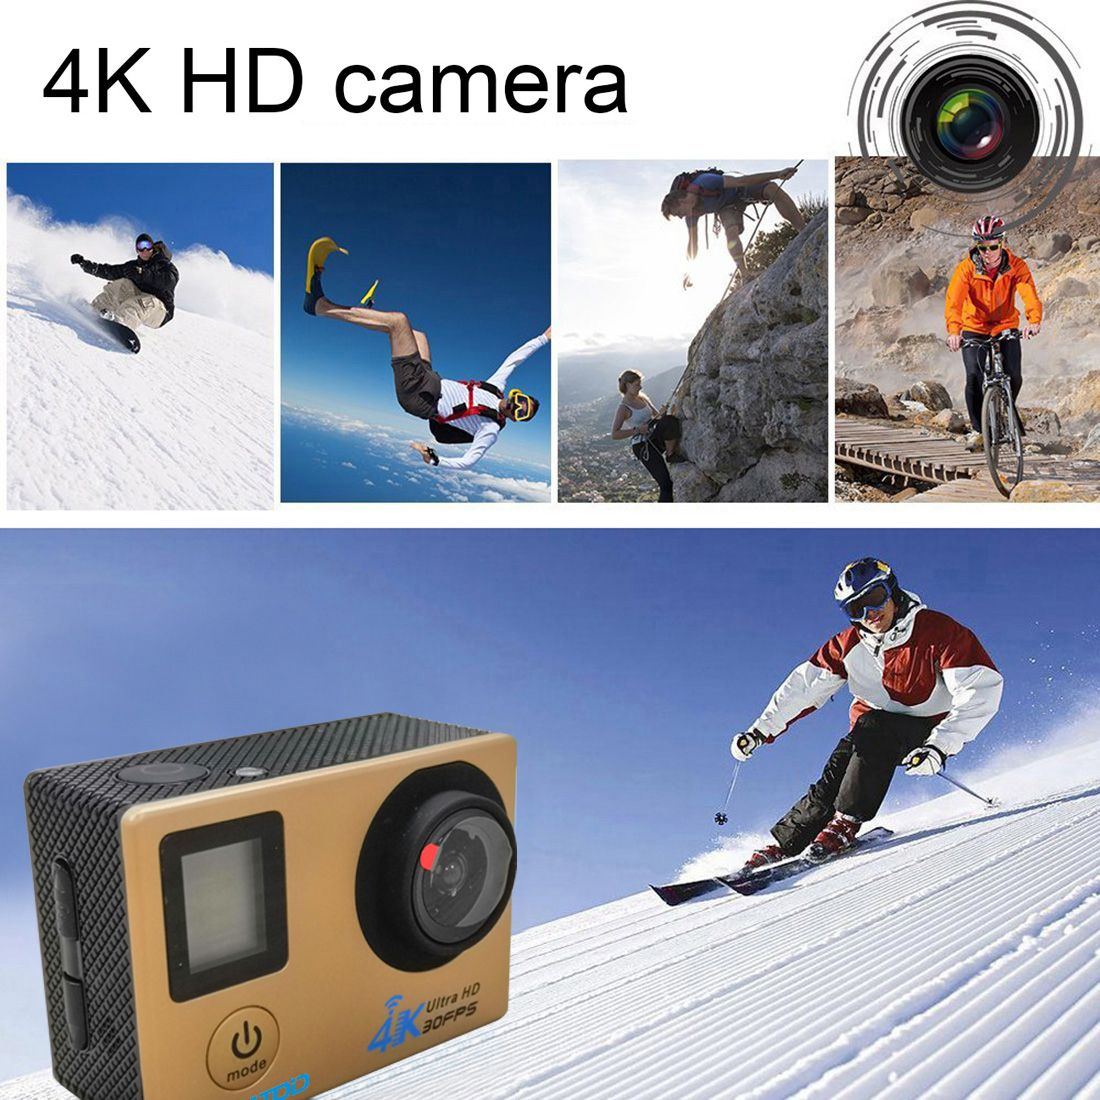 HAMTOD-H12-4K-WIFI-Anti-Shake-Waterproof-Vlog-Loop-Video-Sport-Camera-1448699